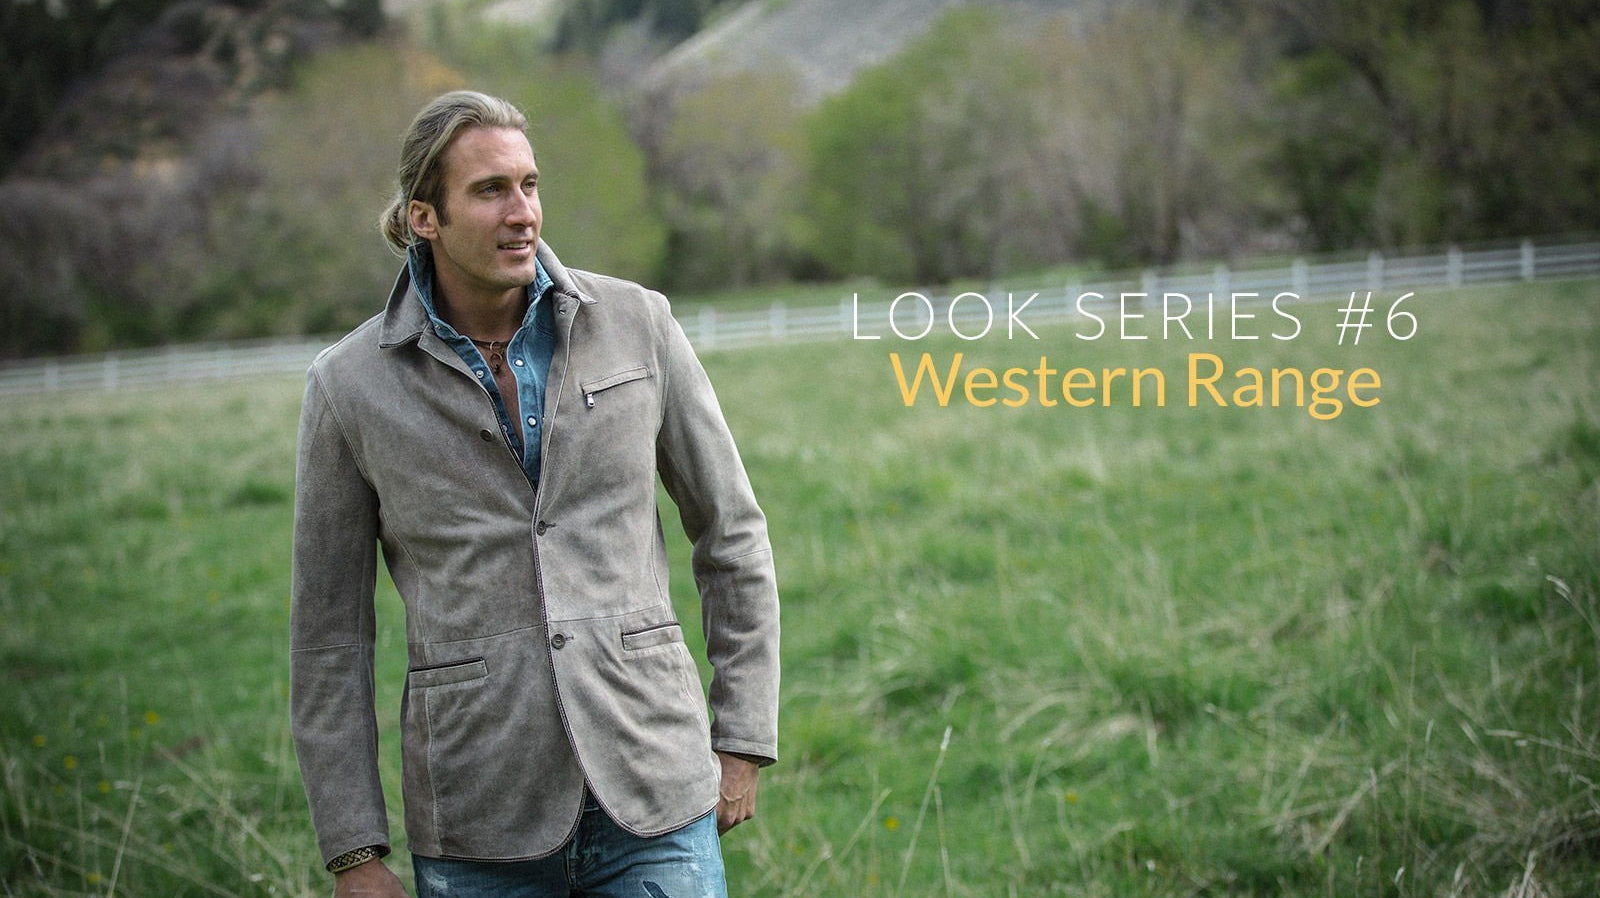 Look Series #6: Western Range